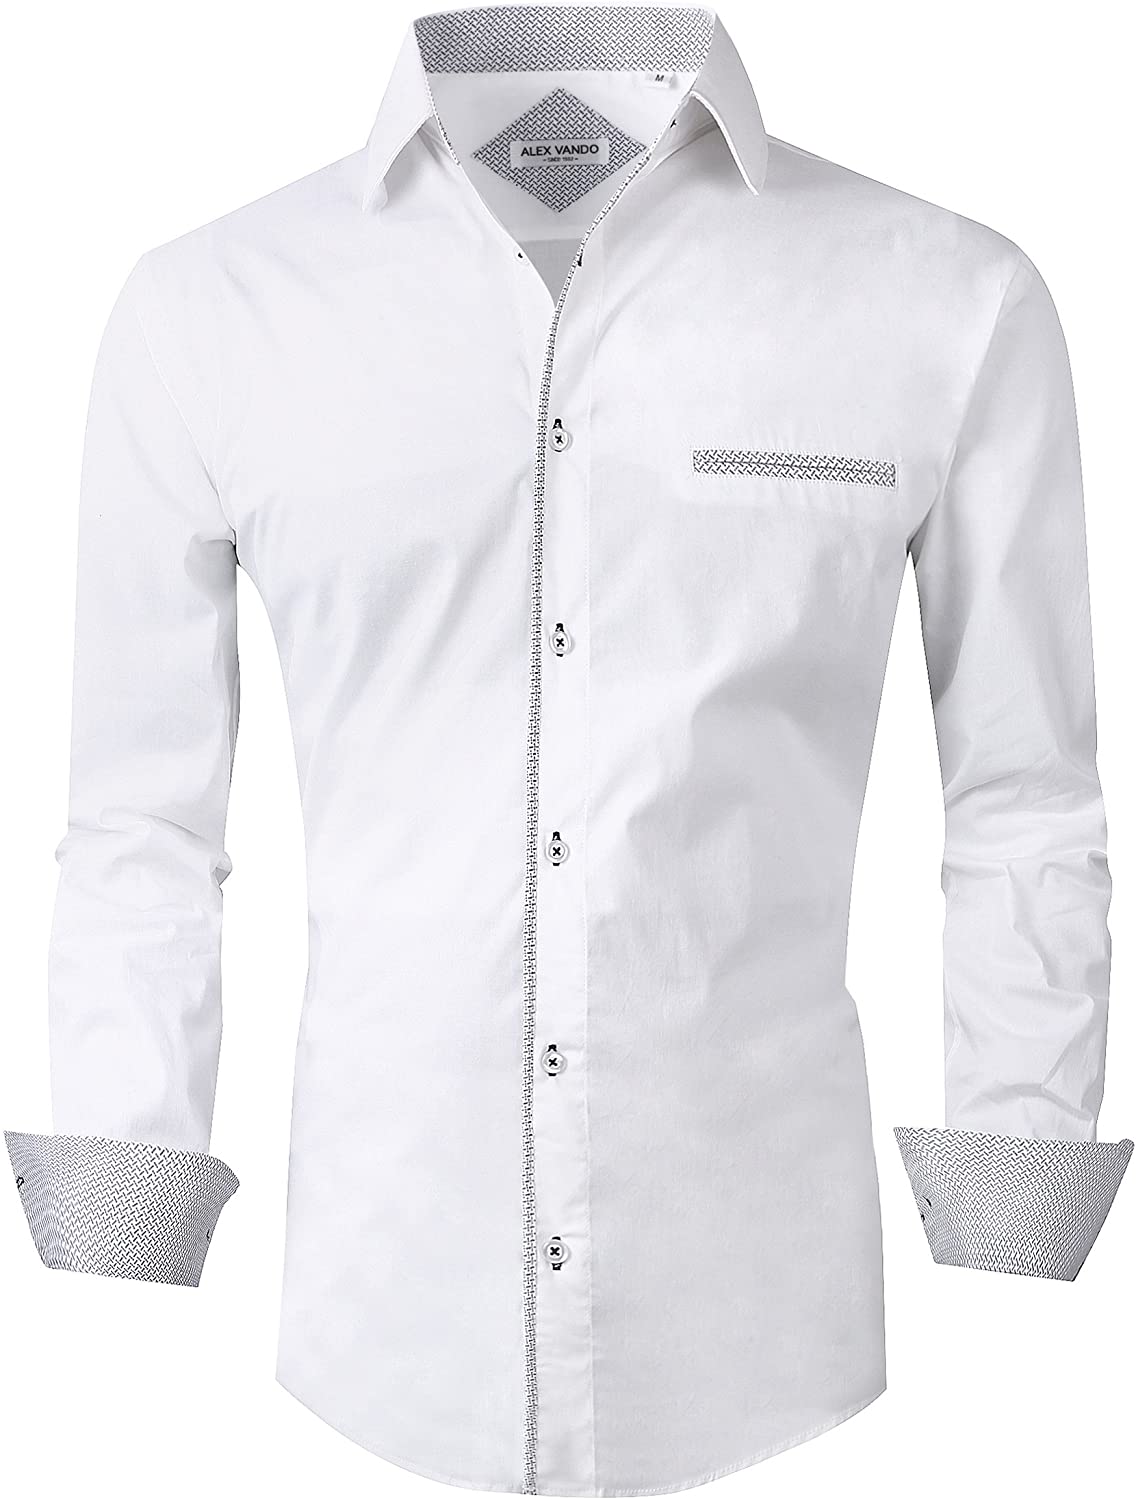 Alex Vando Mens Button Down Shirts Regular Fit Long Sleeve Cotton Casual Dress Shirt 